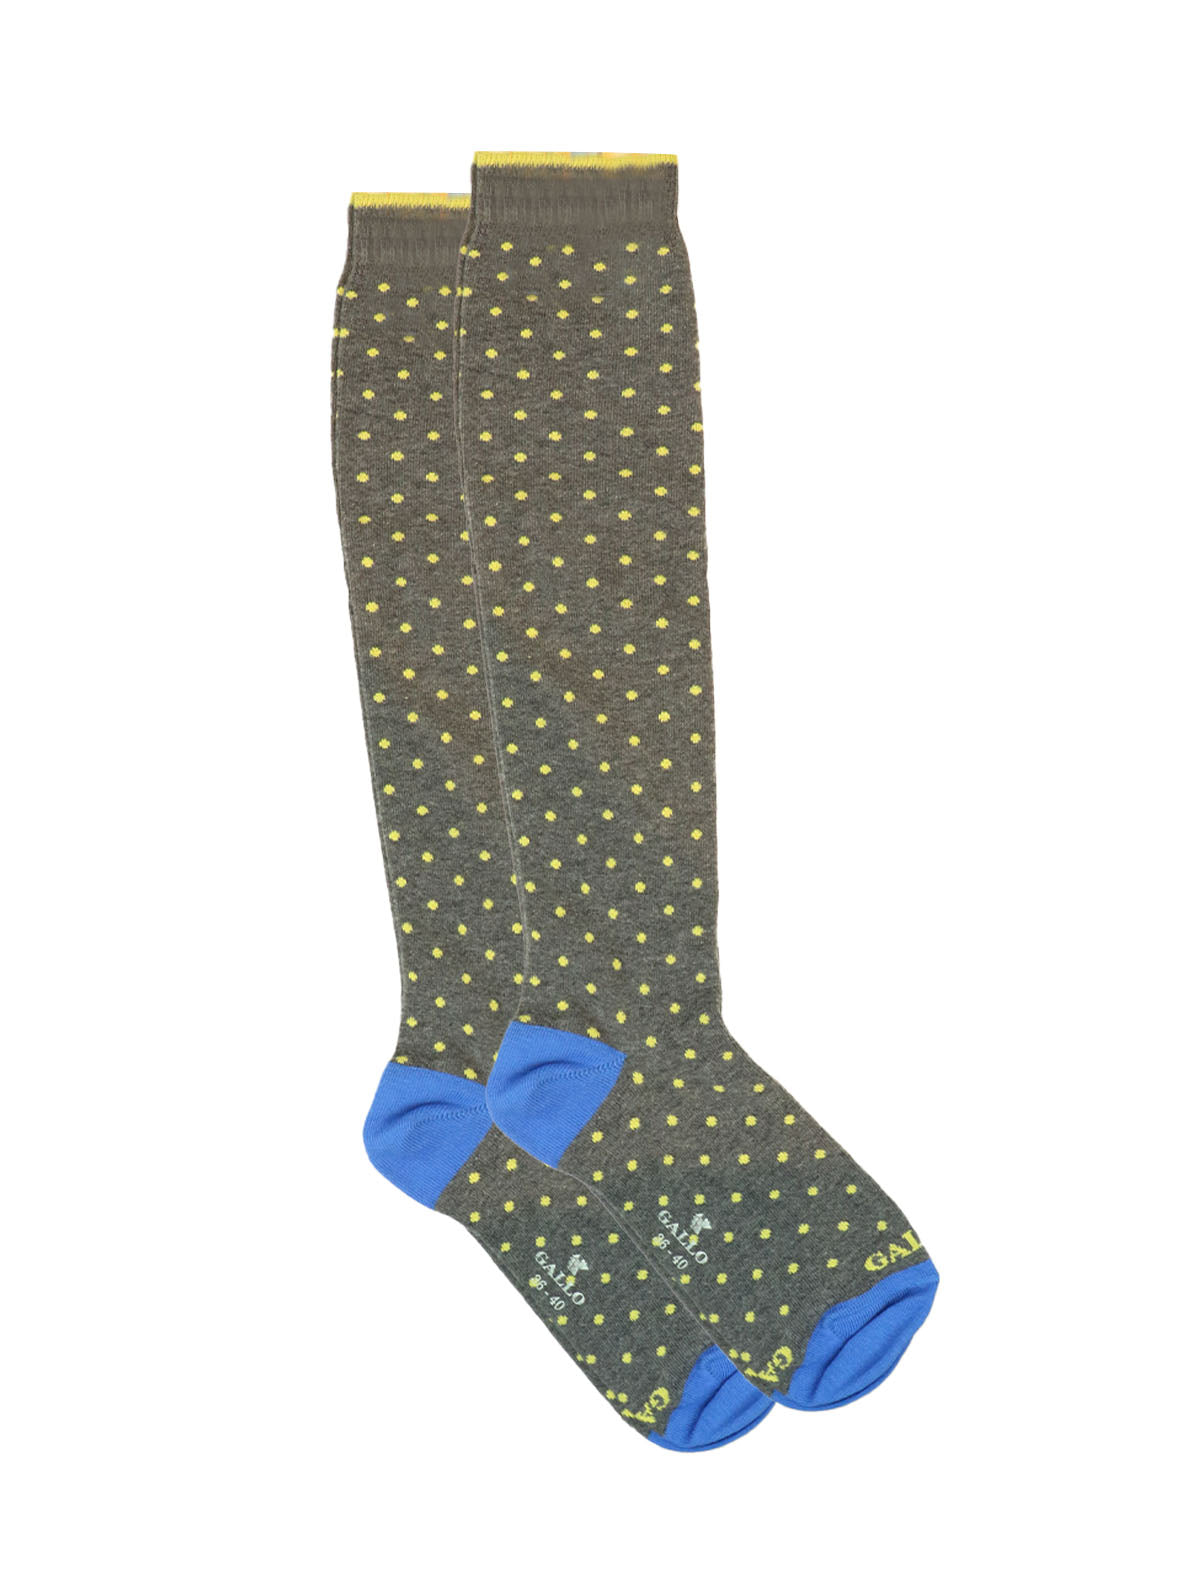 Gallo Long Socks in Olive Polka Dot Print